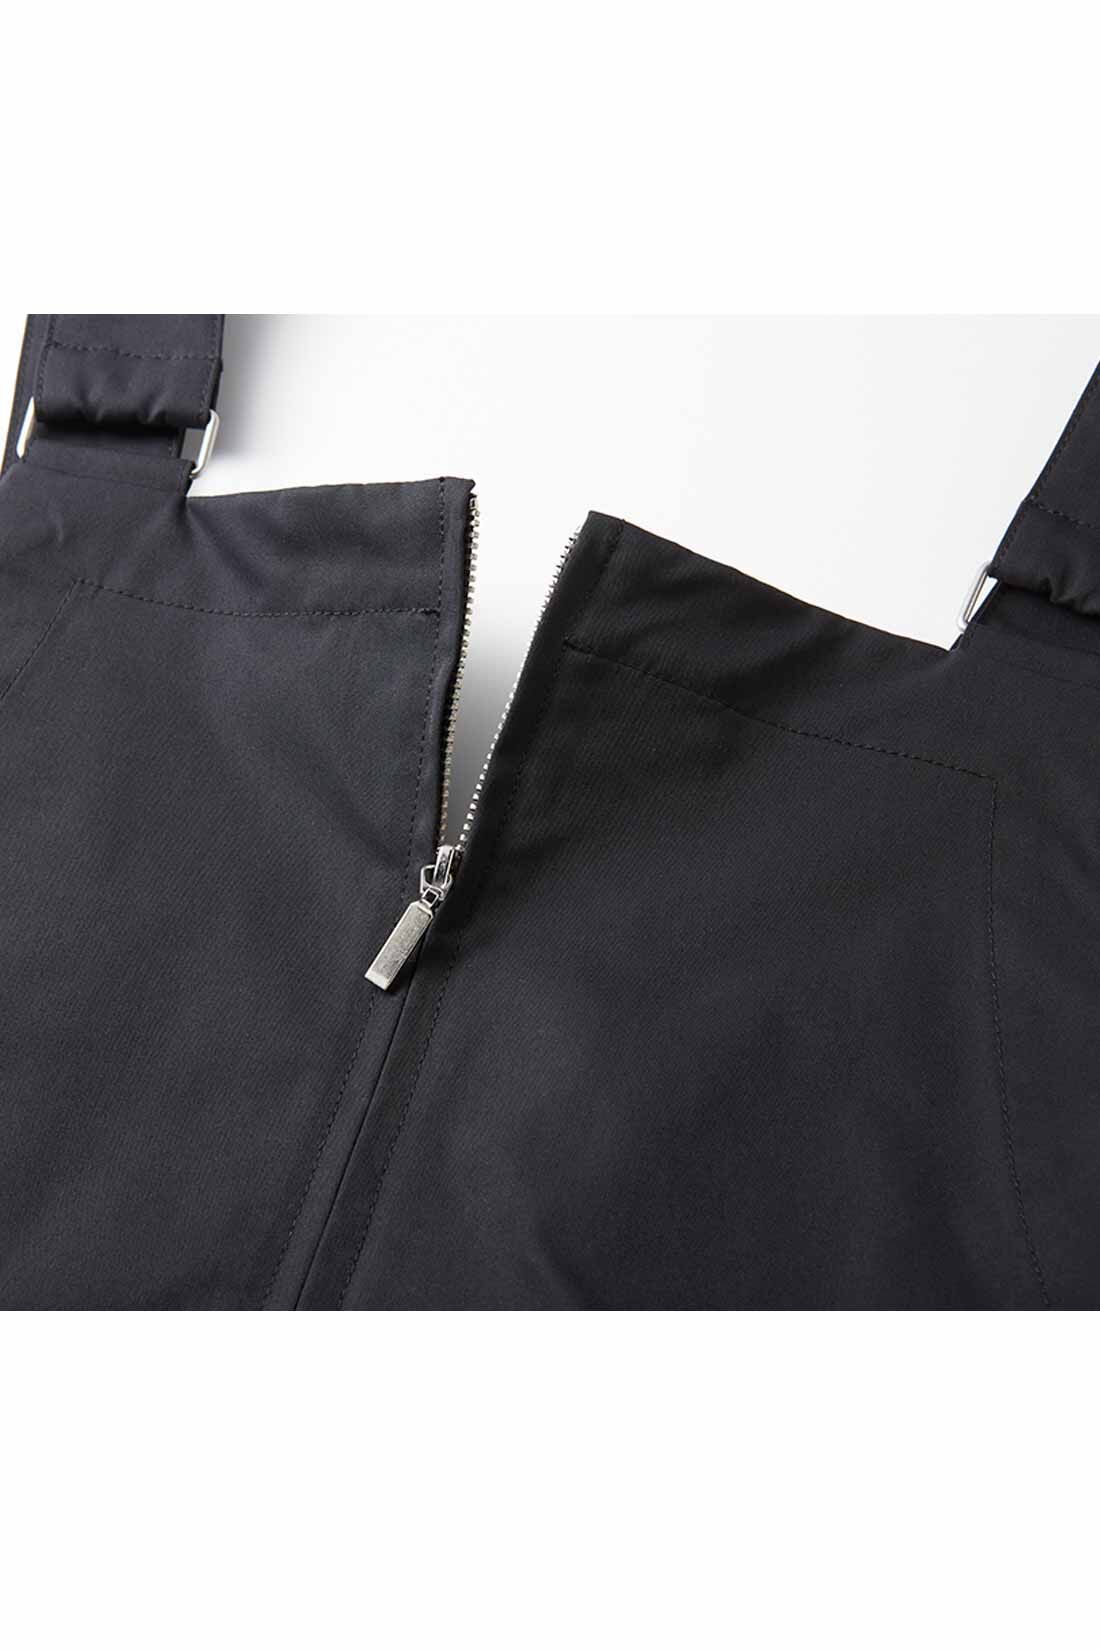 IEDIT|【コーデ買いキャンペーン】IEDIT[イディット]　小森美穂子さんコラボ 撥水（はっすい）素材の大人ジャンパースカート〈ブラック〉|インナーに合わせて開き加減を調整できるフロントファスナーもデザインポイント。